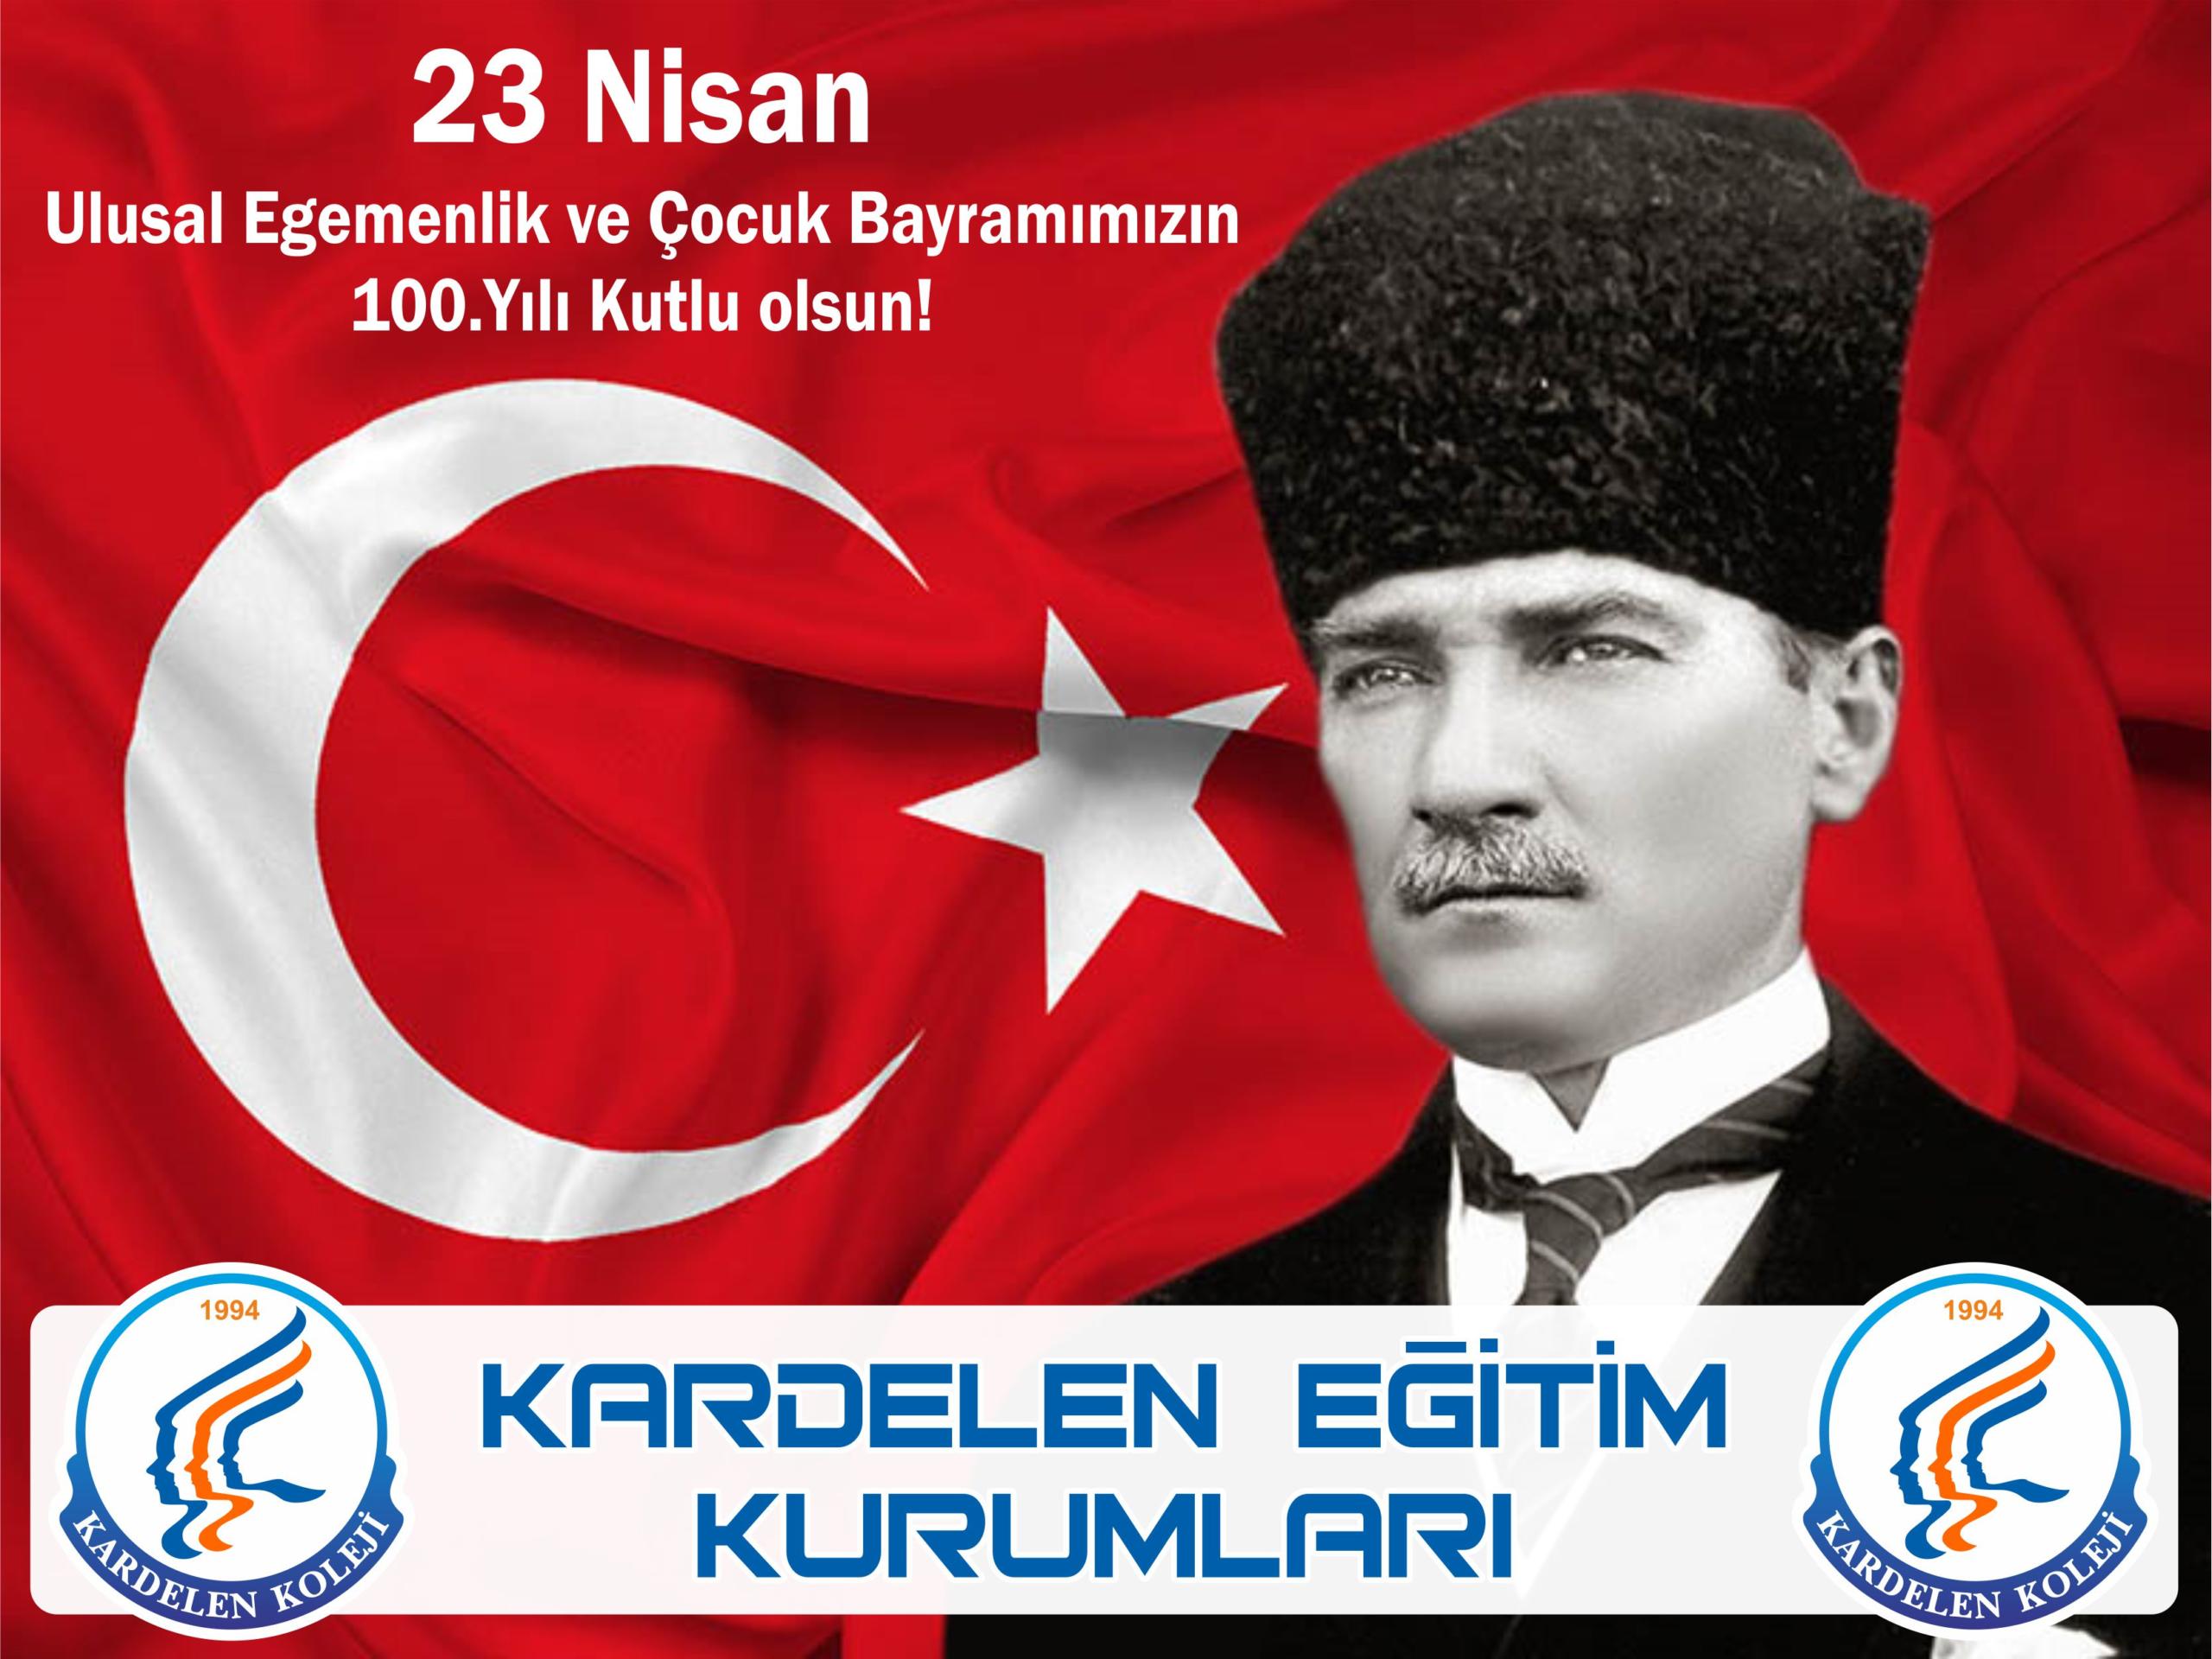 Nevşehir Özel Kardelen Koleji, Türkiye Büyük Millet Meclisi’nin açılışının 100’üncü yıl dönümü nedeniyle bir mesaj yayımladı